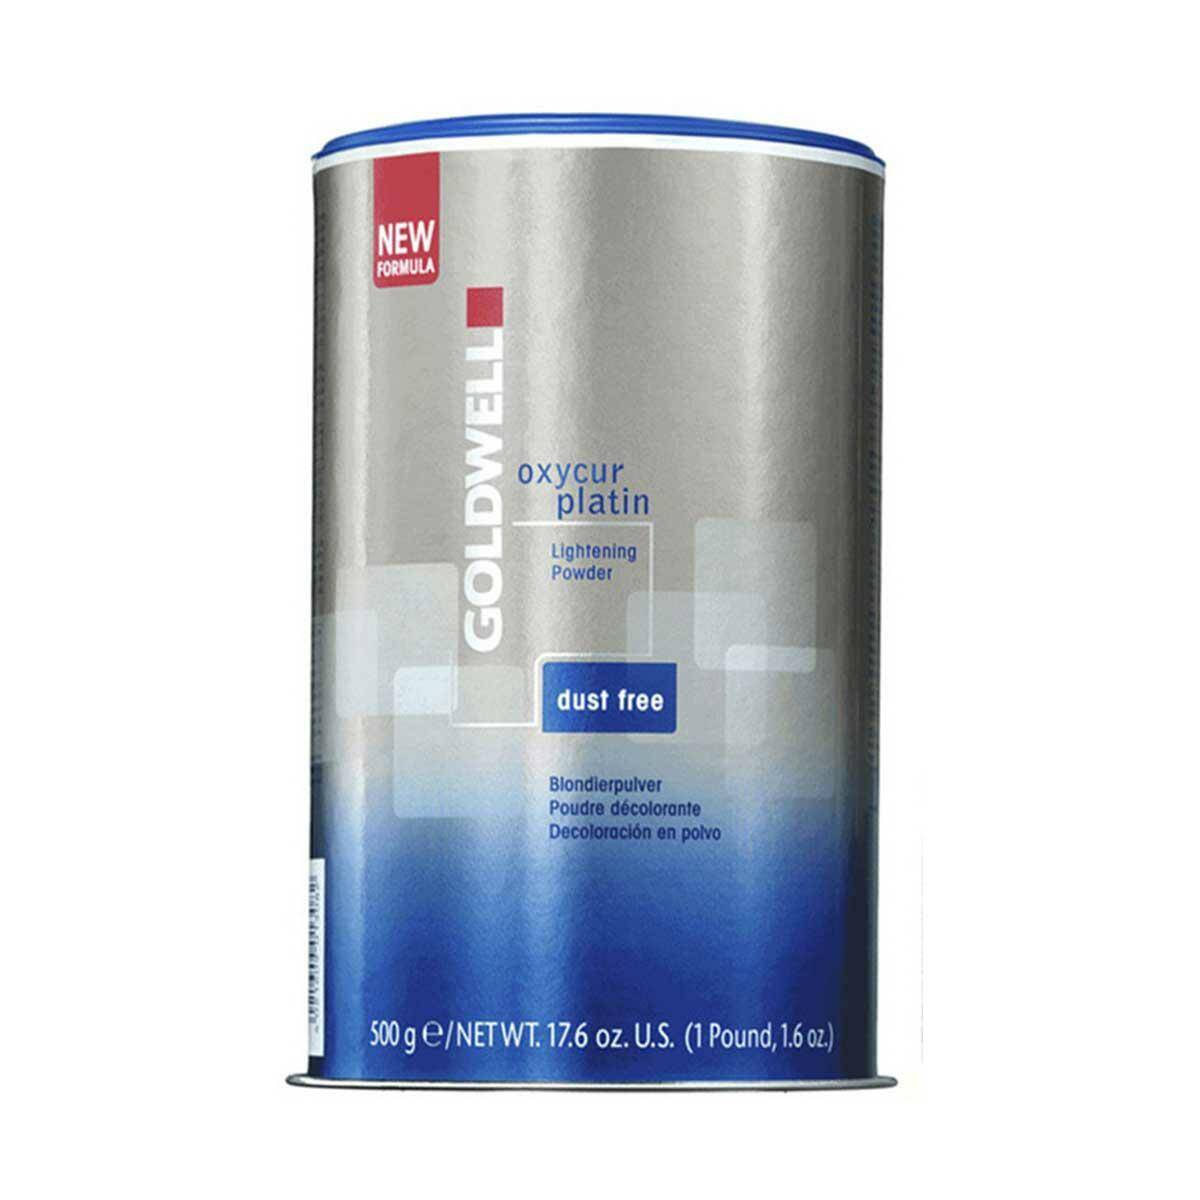 Goldwell Oxycur Platin Dust Free Rozjaśniacz do włosów w proszku 500g